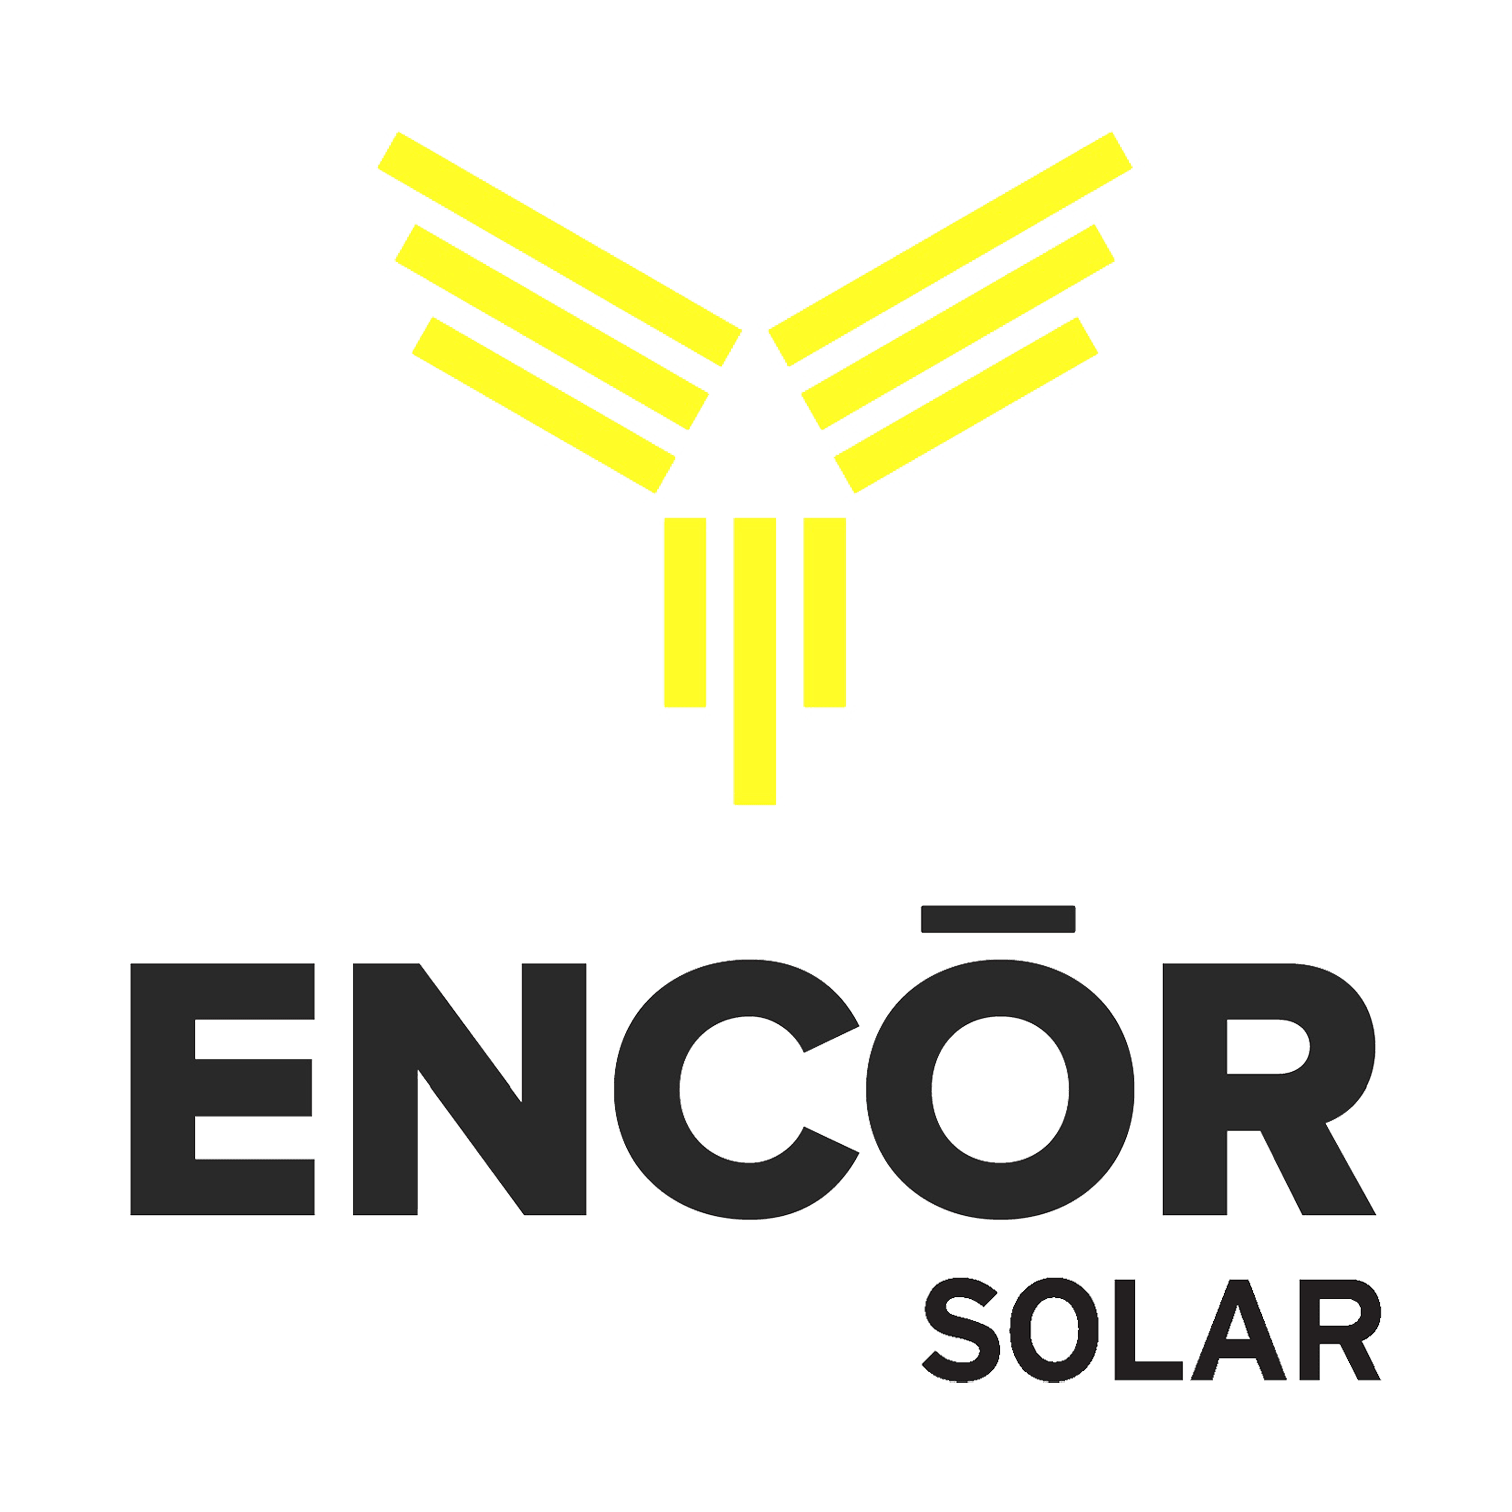 Encor Solar este o companie bună?